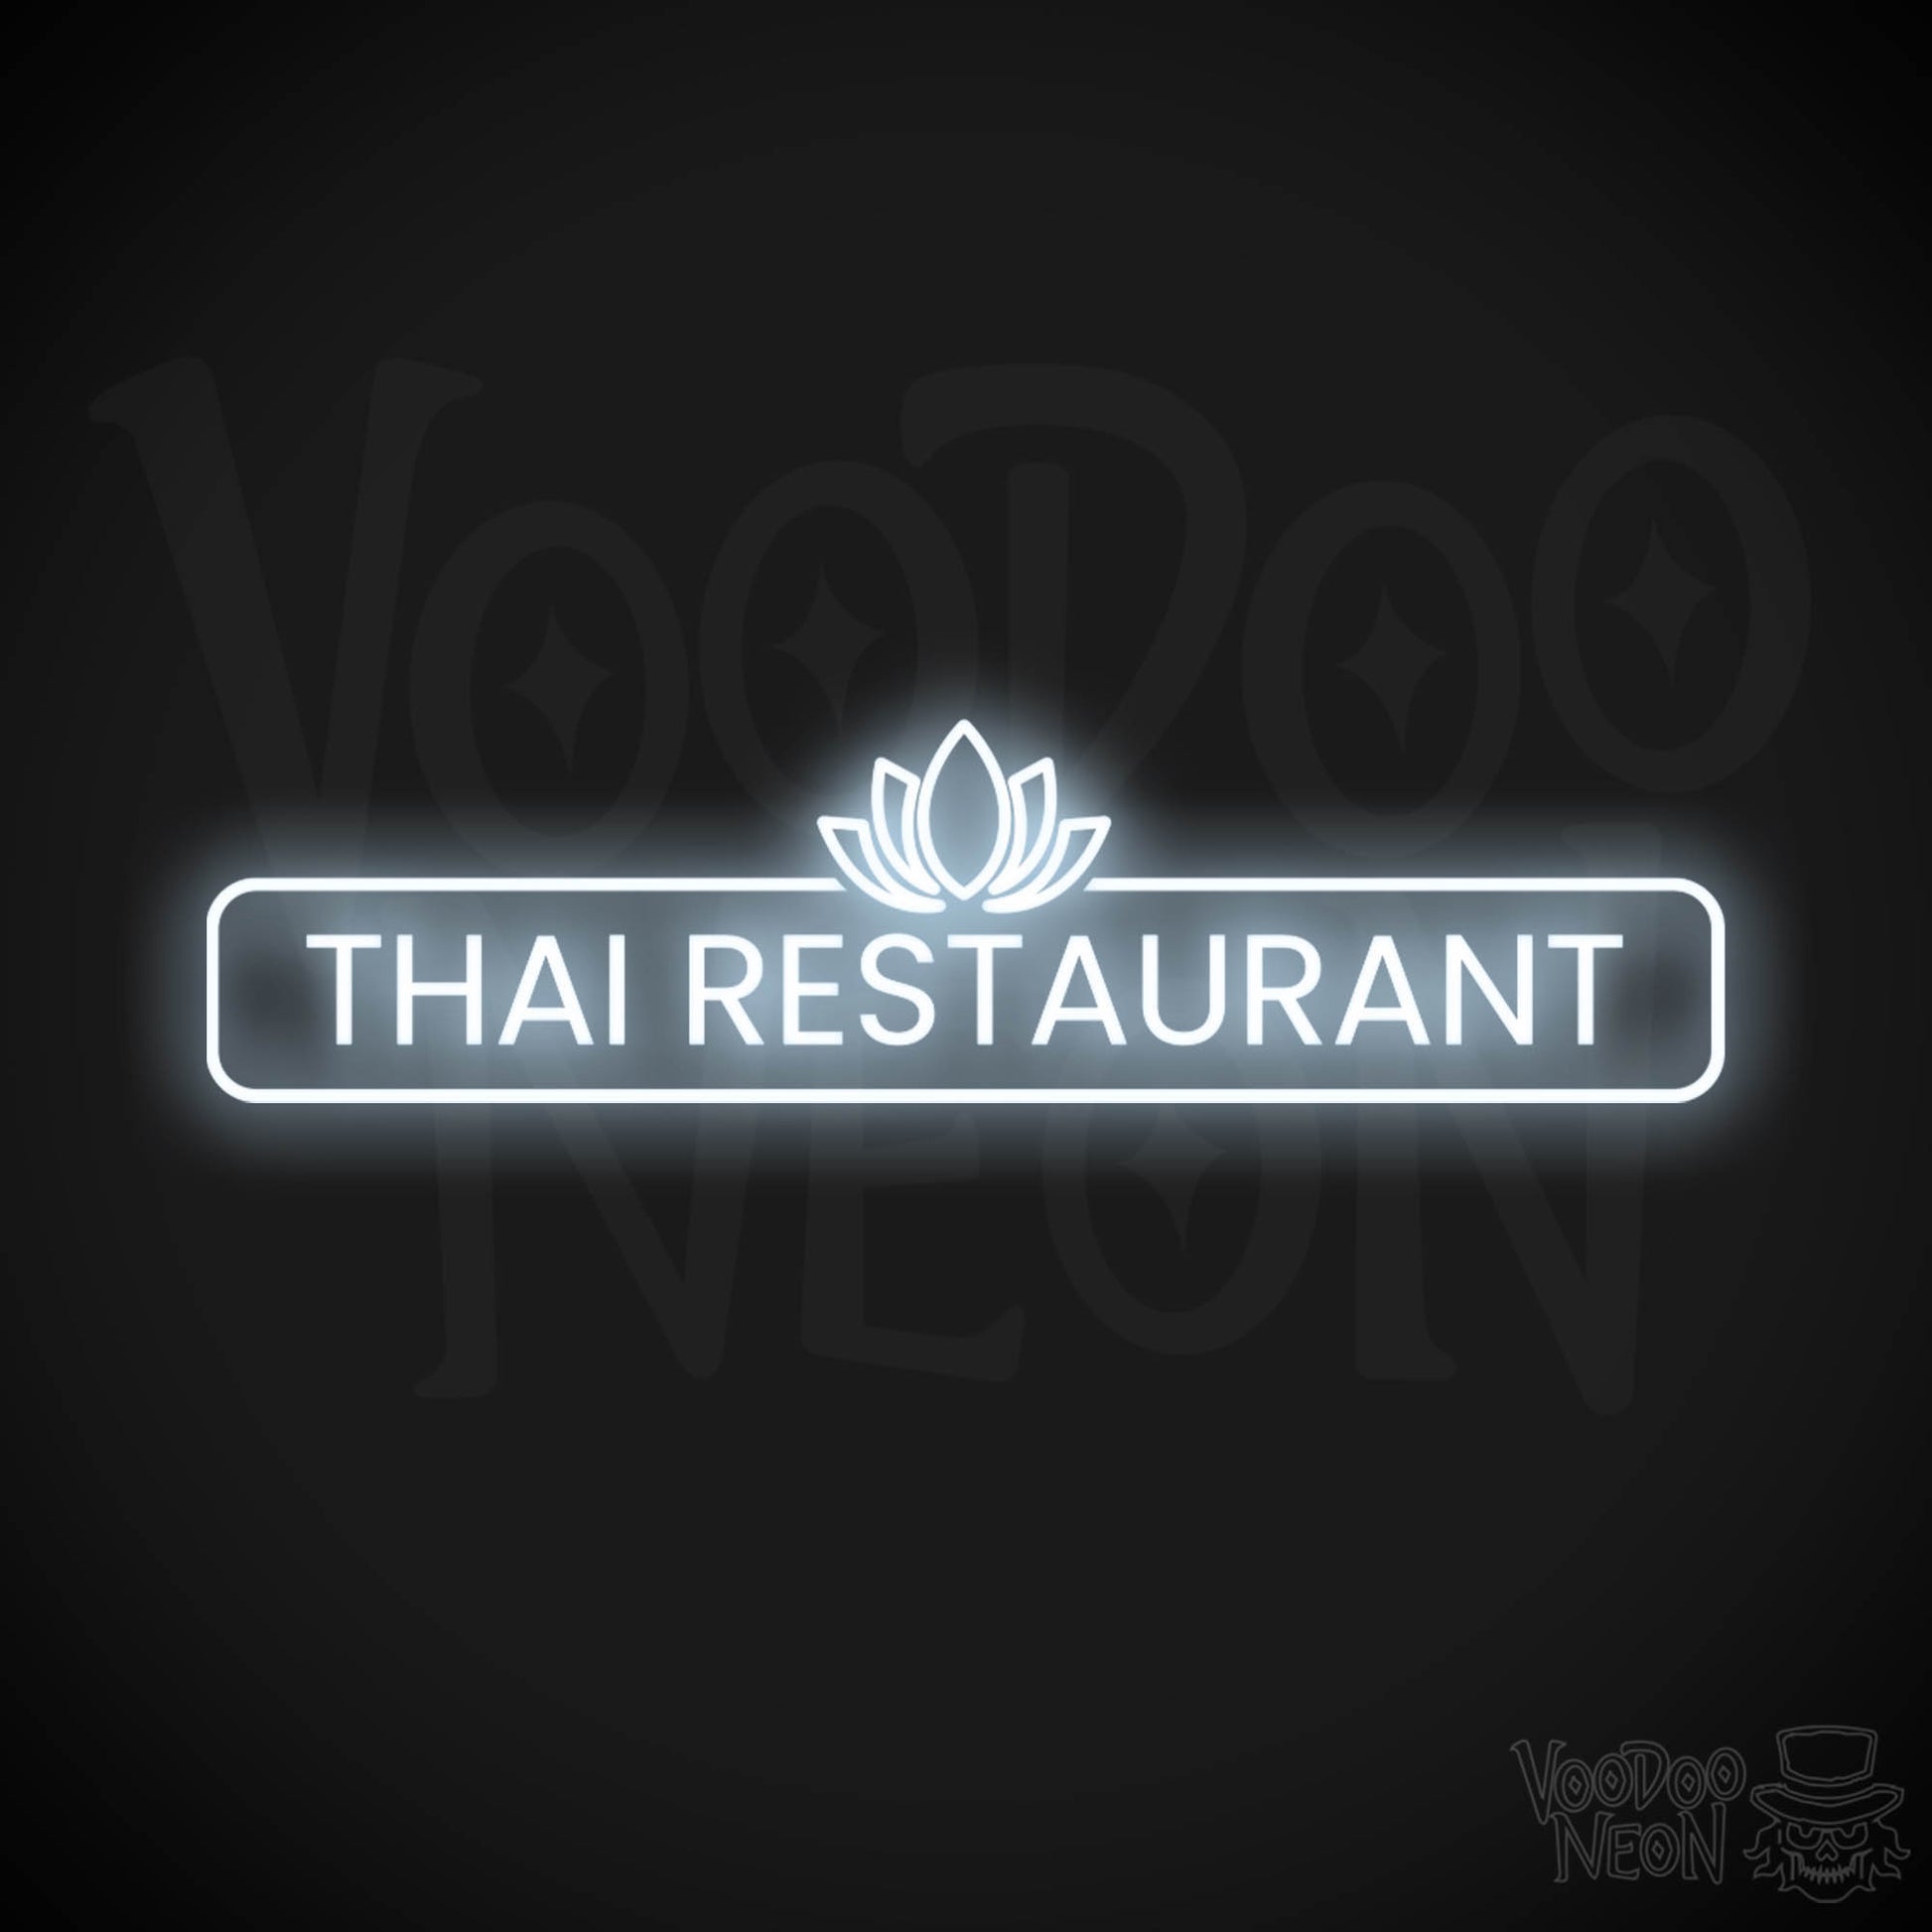 Thai Restaurant LED Neon - Cool White